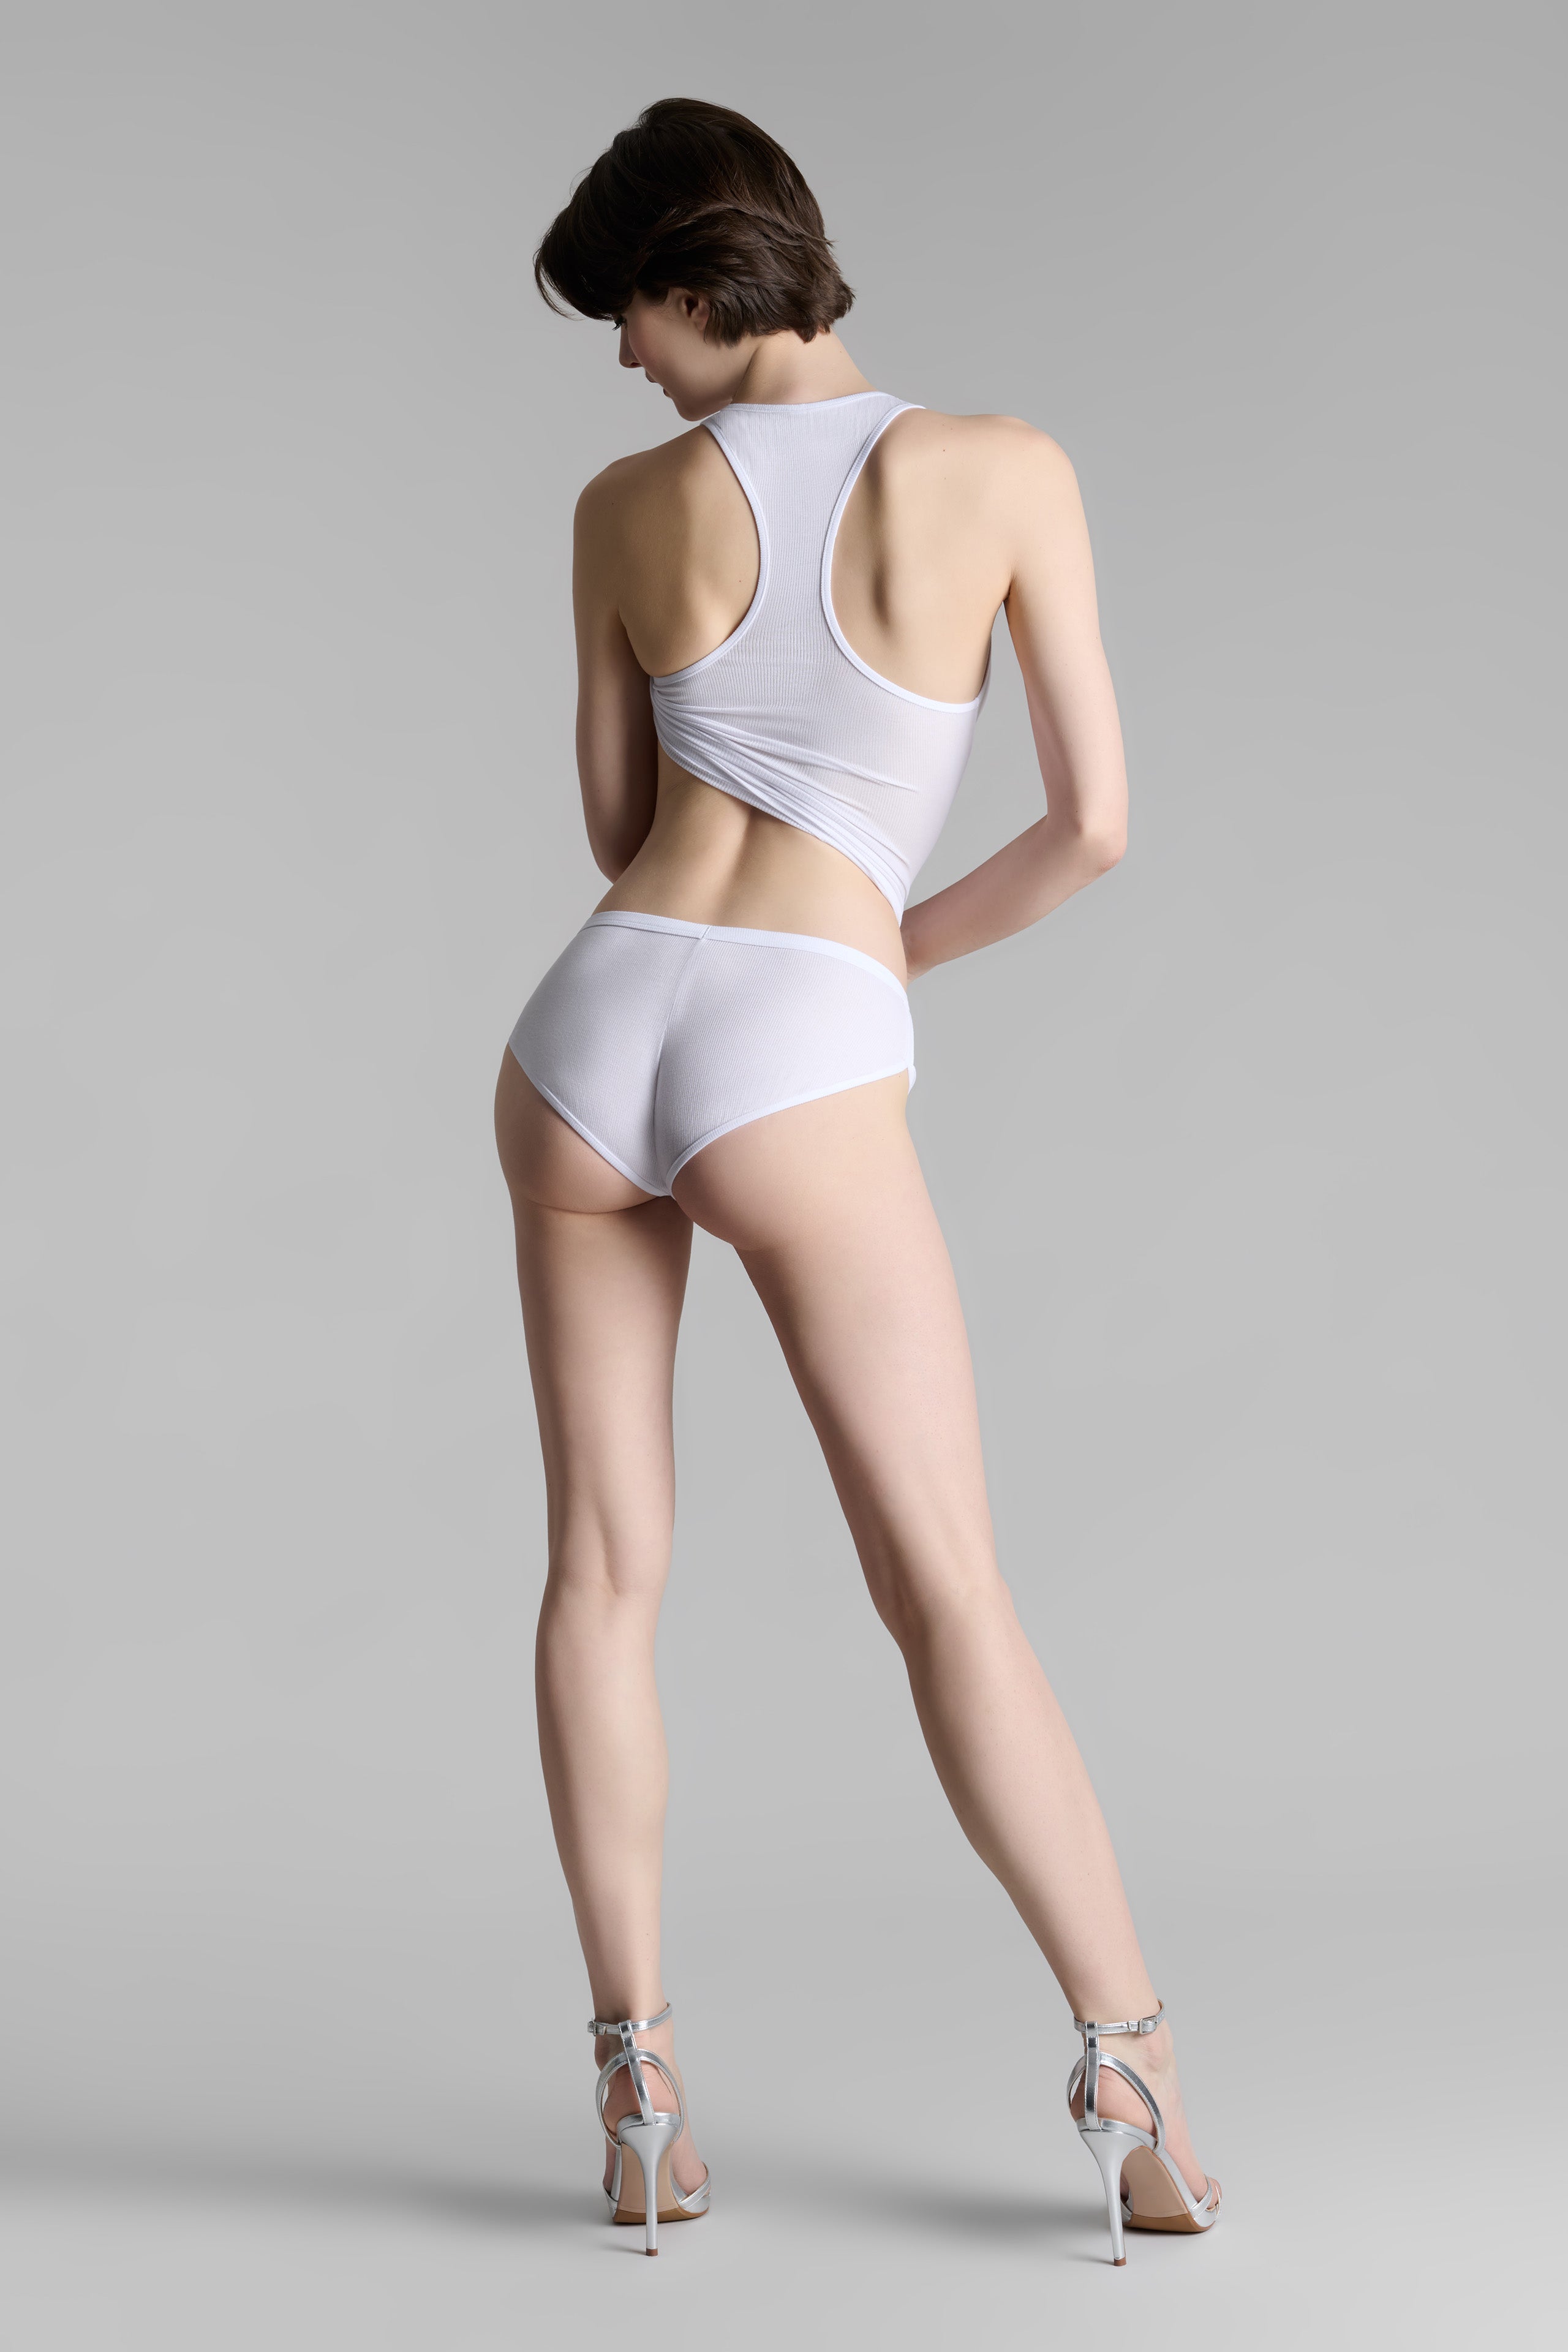 Mini-Shorts - La Femme Amazone